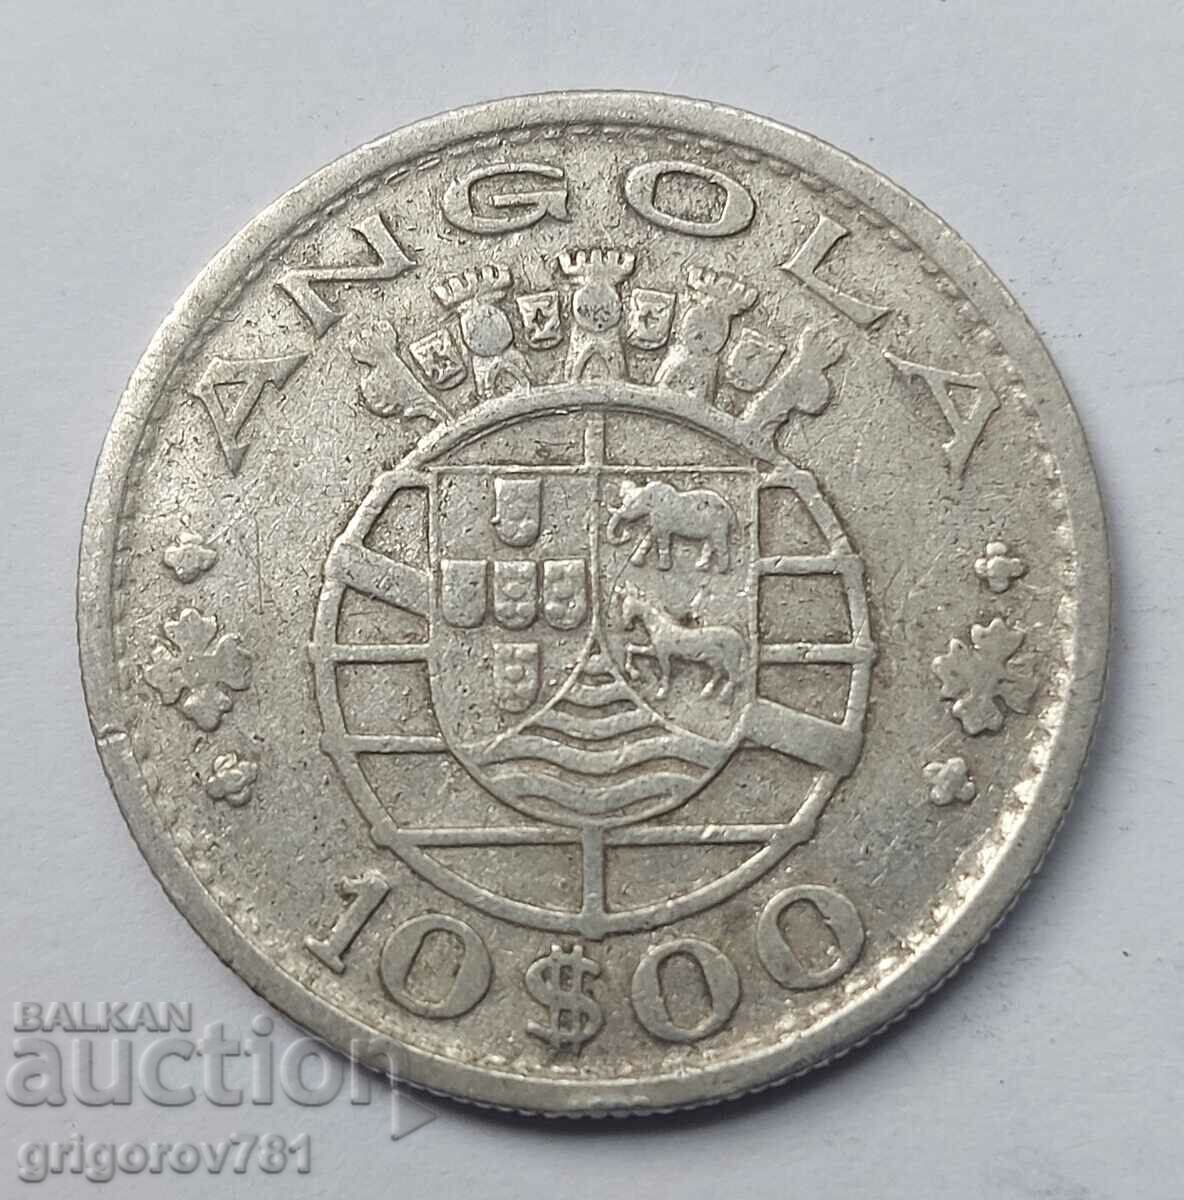 10 Escudo Argint Angola 1952 - Moneda de argint #6